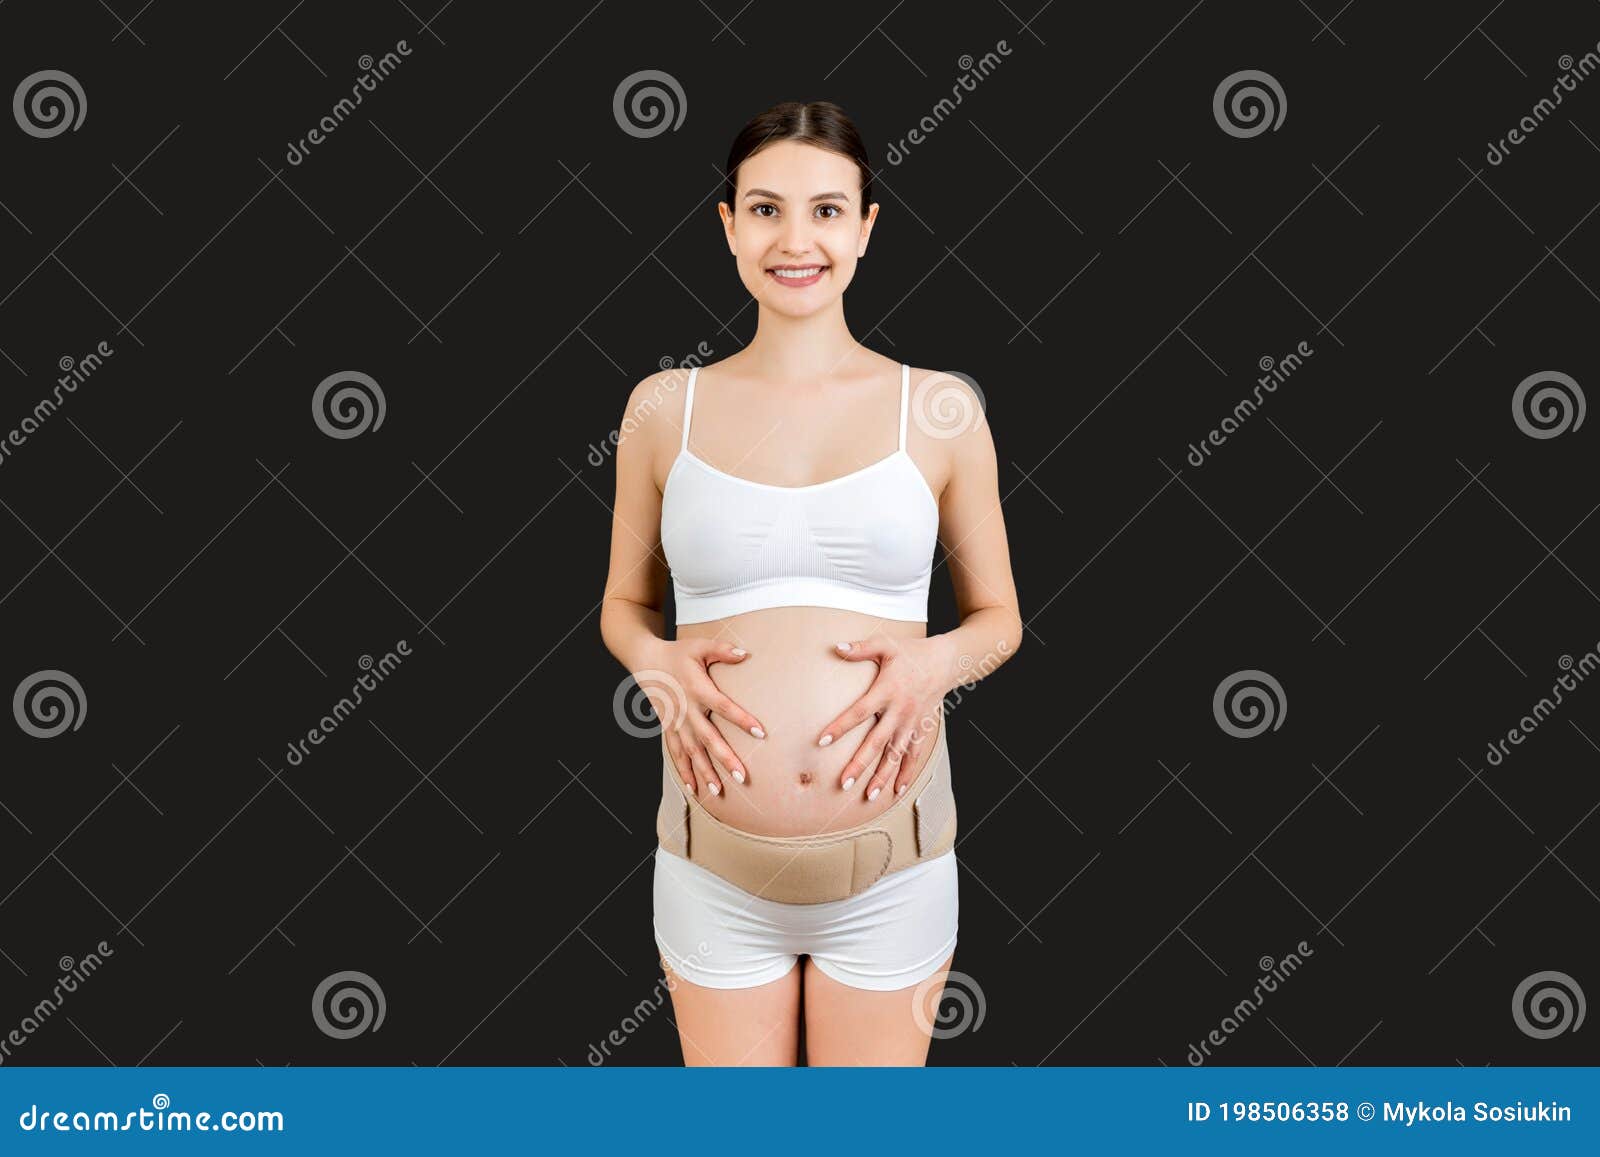 Retrato De Mujer Embarazada En Ropa Interior Con Venda Contra El Dolor En La Espalda Con Fondo Negro Con Espacio De Copia Foto archivo - Imagen de medicina, mama: 198506358